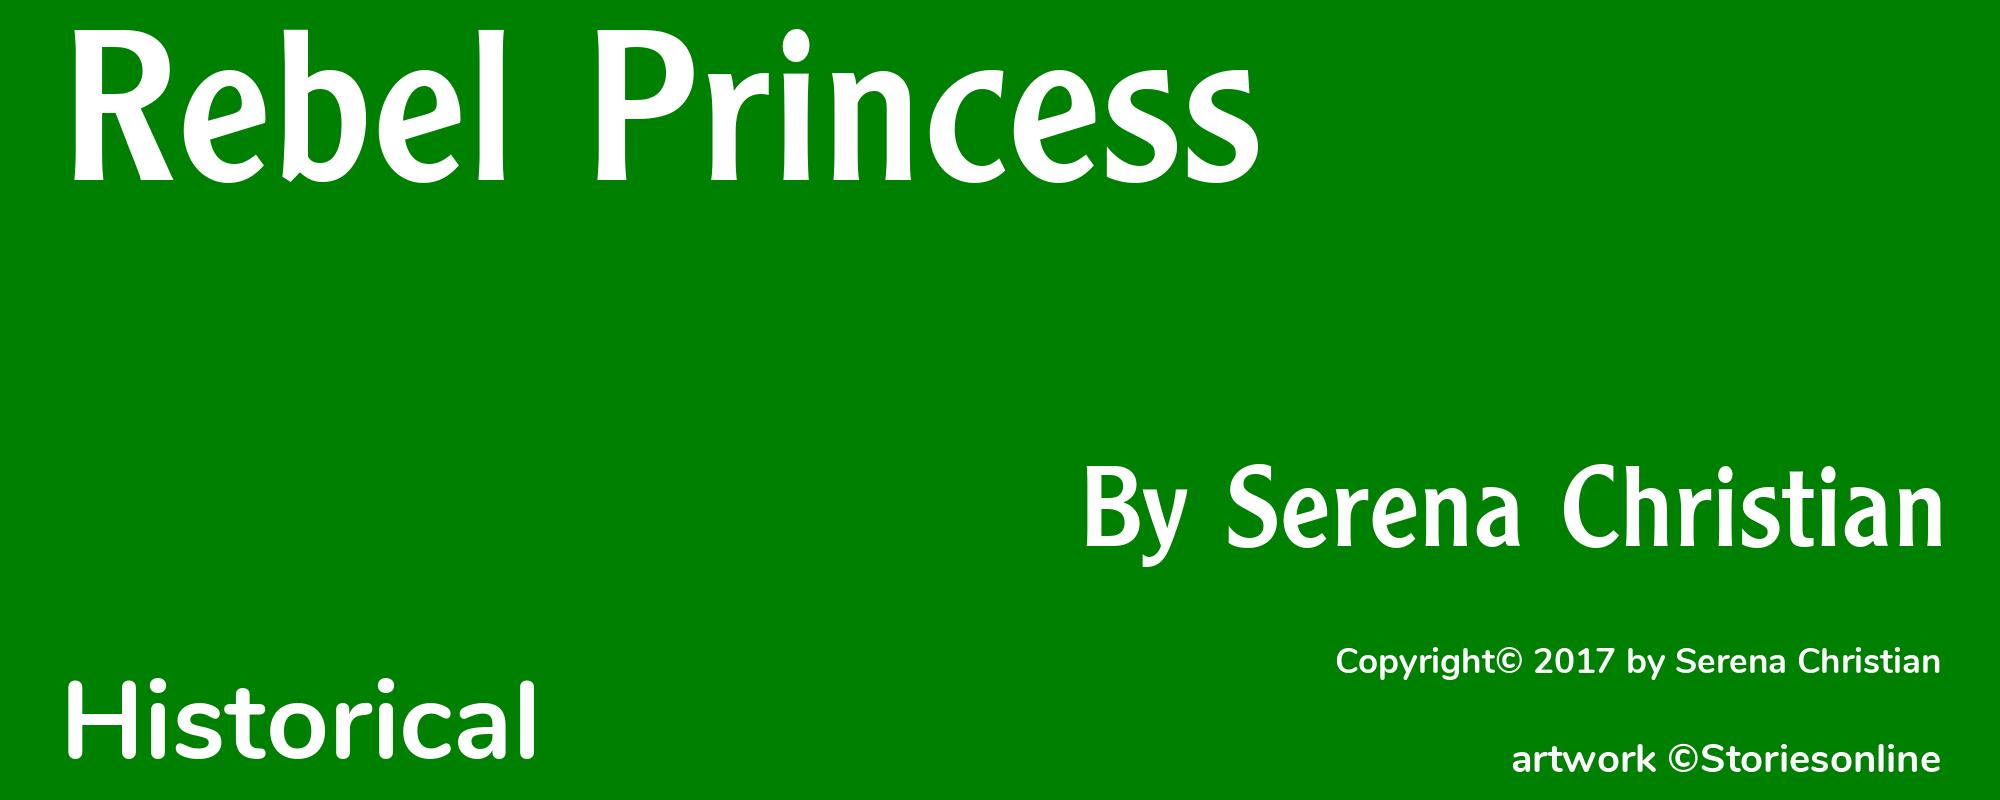 Rebel Princess - Cover